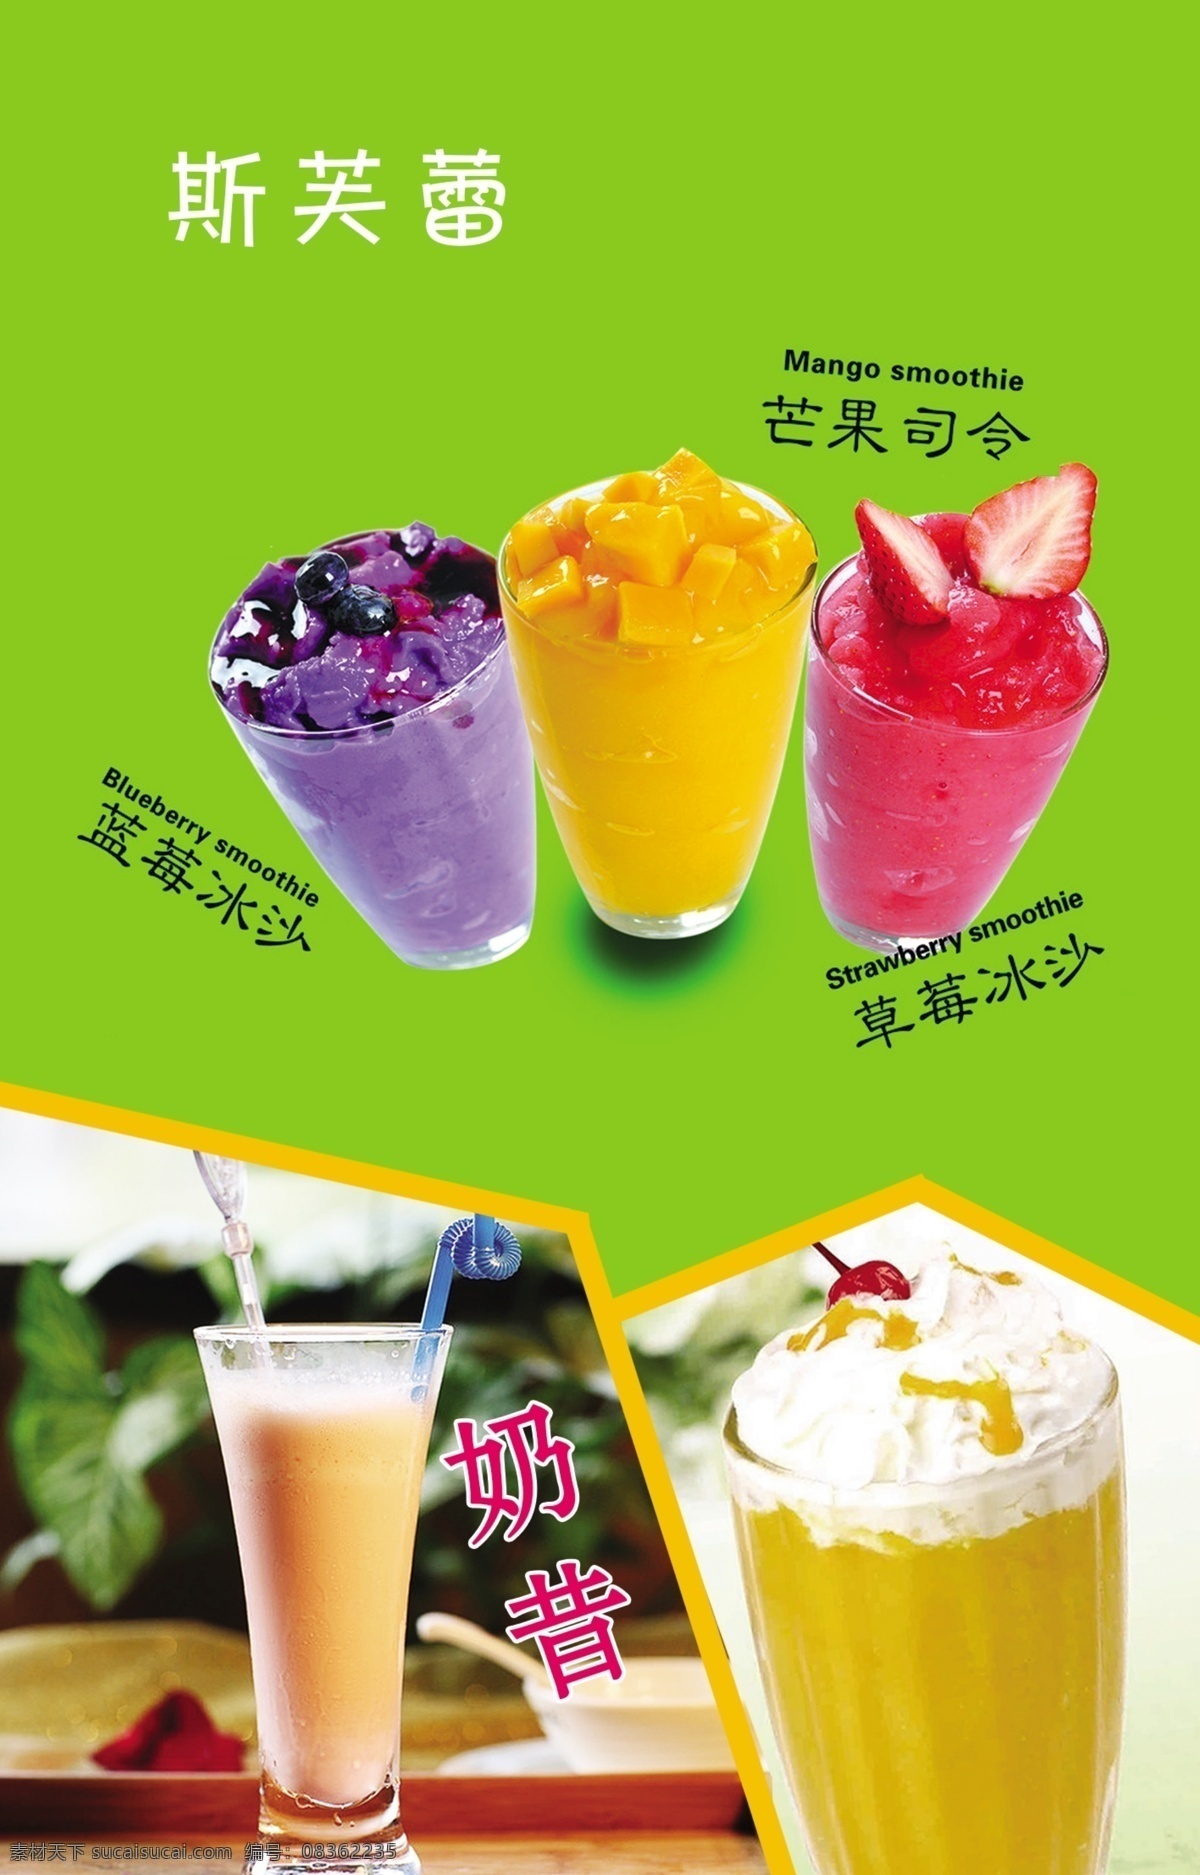 芒果司令 草莓沙冰 蓝莓沙冰 奶昔 分层 设计素材 宣传海报 促销广告 饮料 绿色